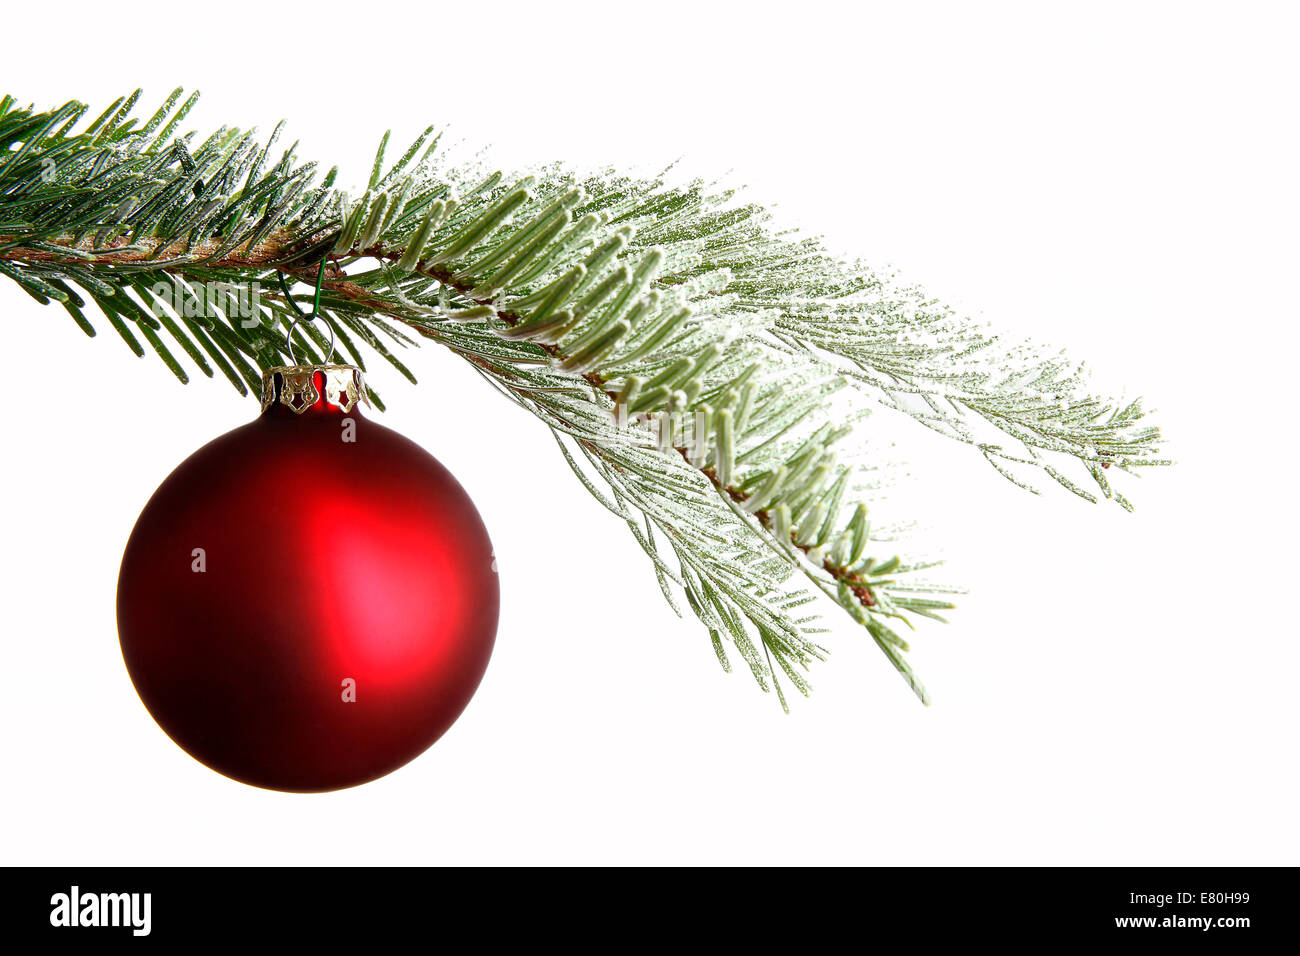 Red palla di Natale su un ramo nevoso isolato di fronte a uno sfondo bianco Foto Stock